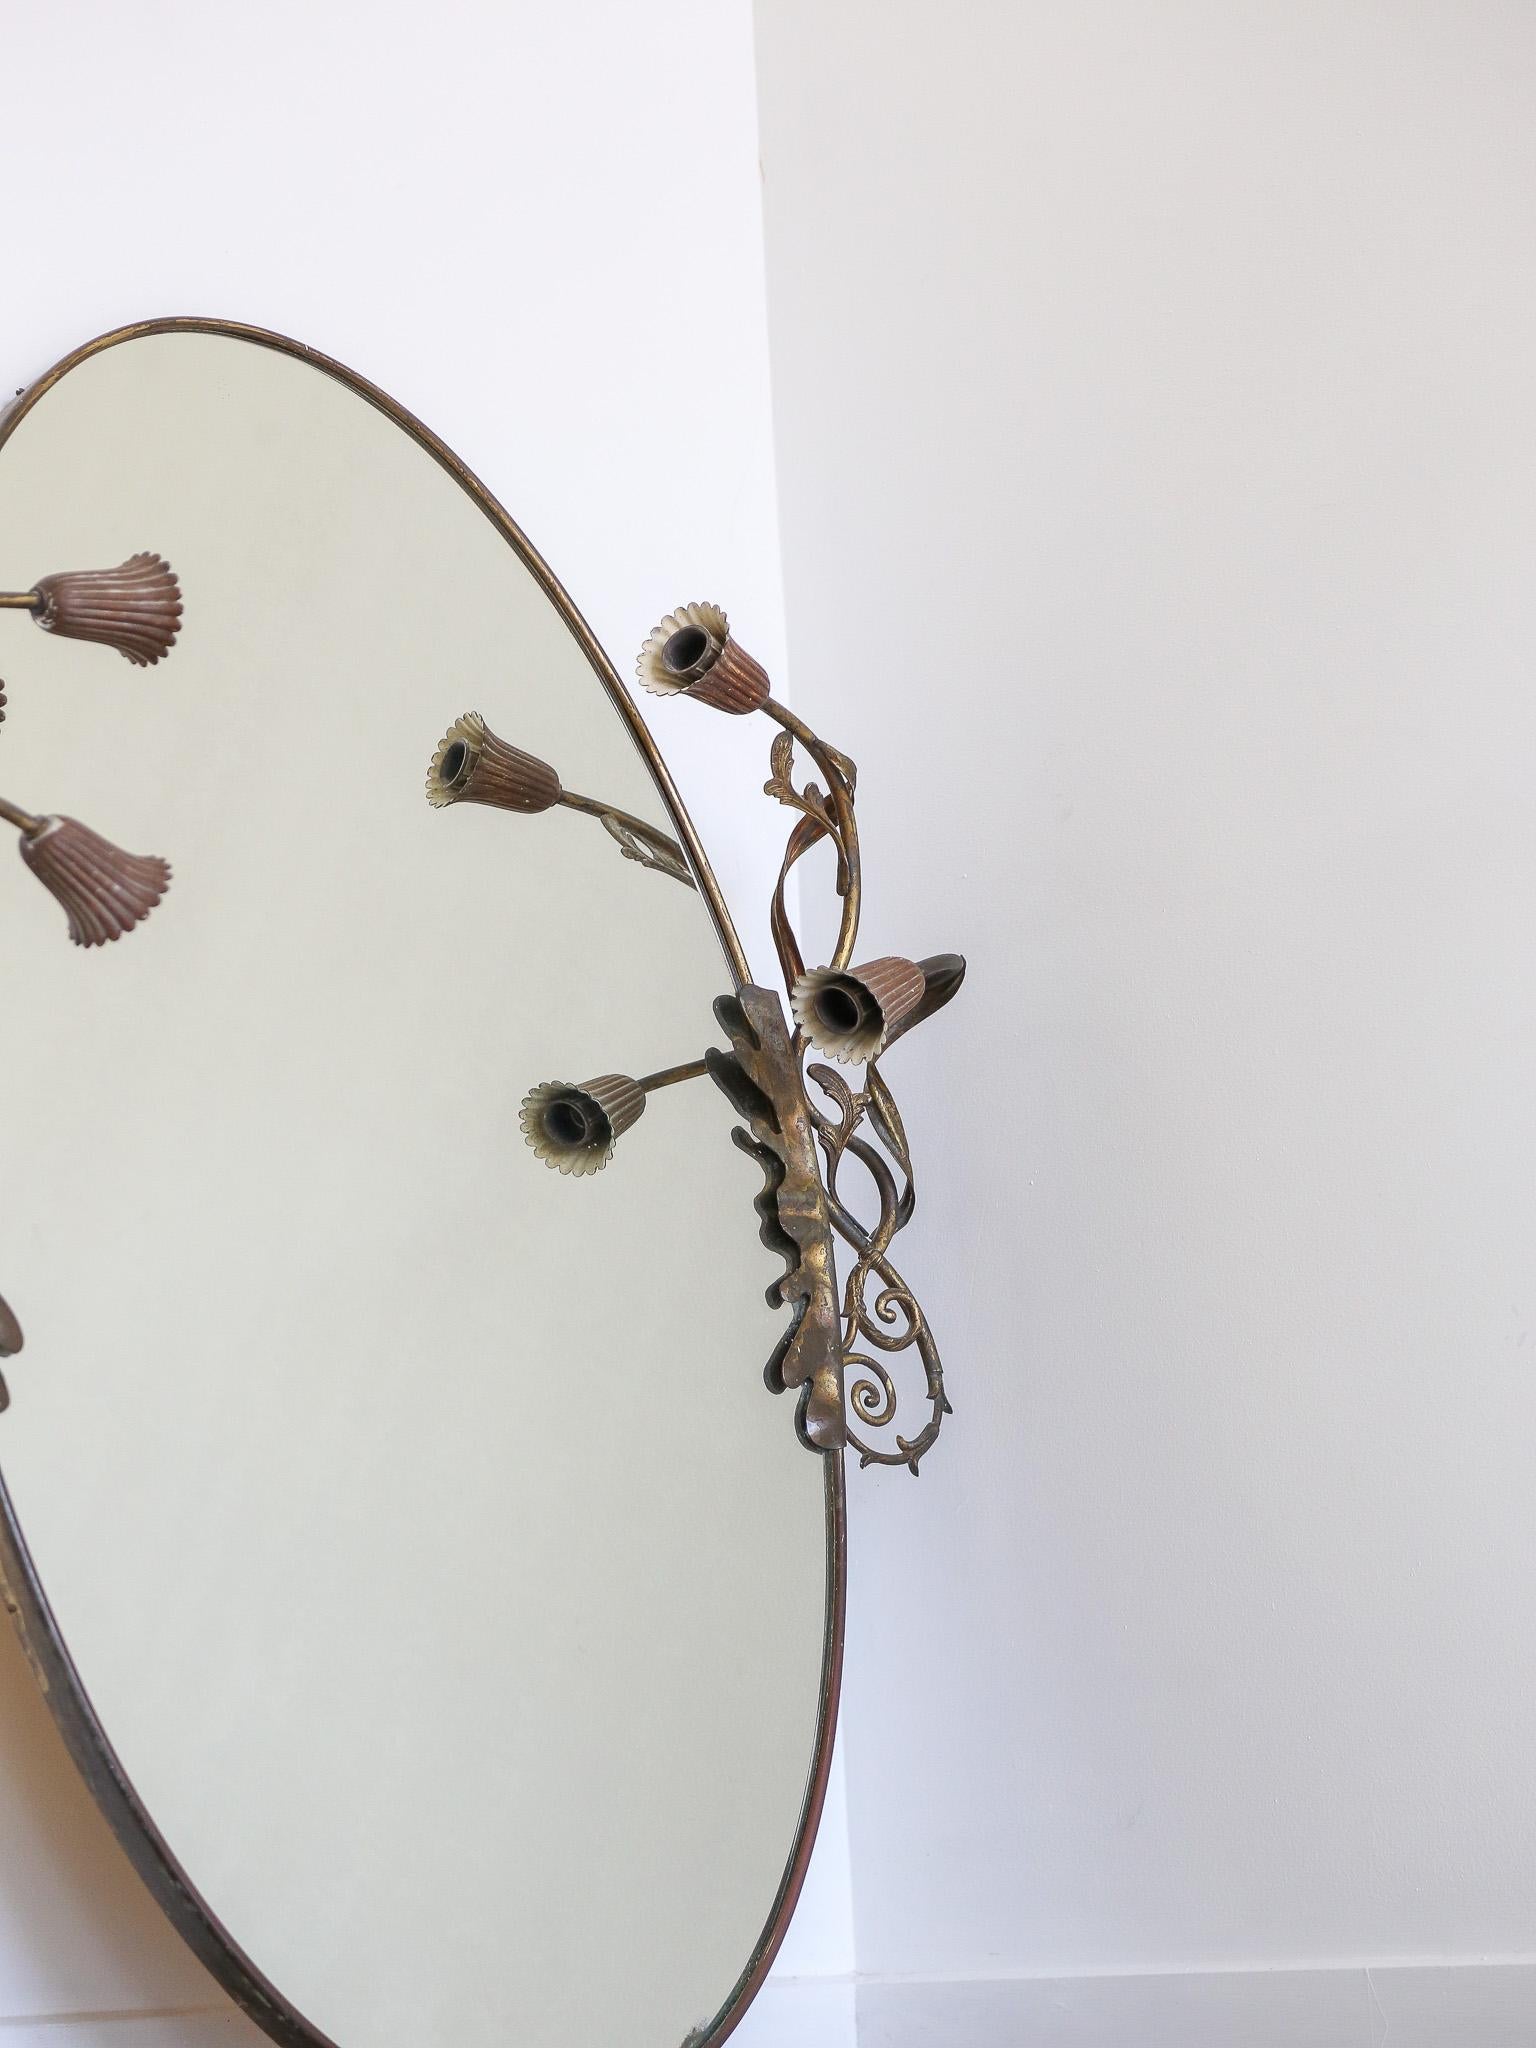  

Italienischer ovaler Art Deco Wandspiegel aus Messing 1950

Diese Spiegel zeichneten sich durch ihre Rahmen aus Messing aus, die ein schlichtes und geometrisches Design mit klaren Linien aufwiesen. In den 1950er Jahren war Messing aufgrund seiner